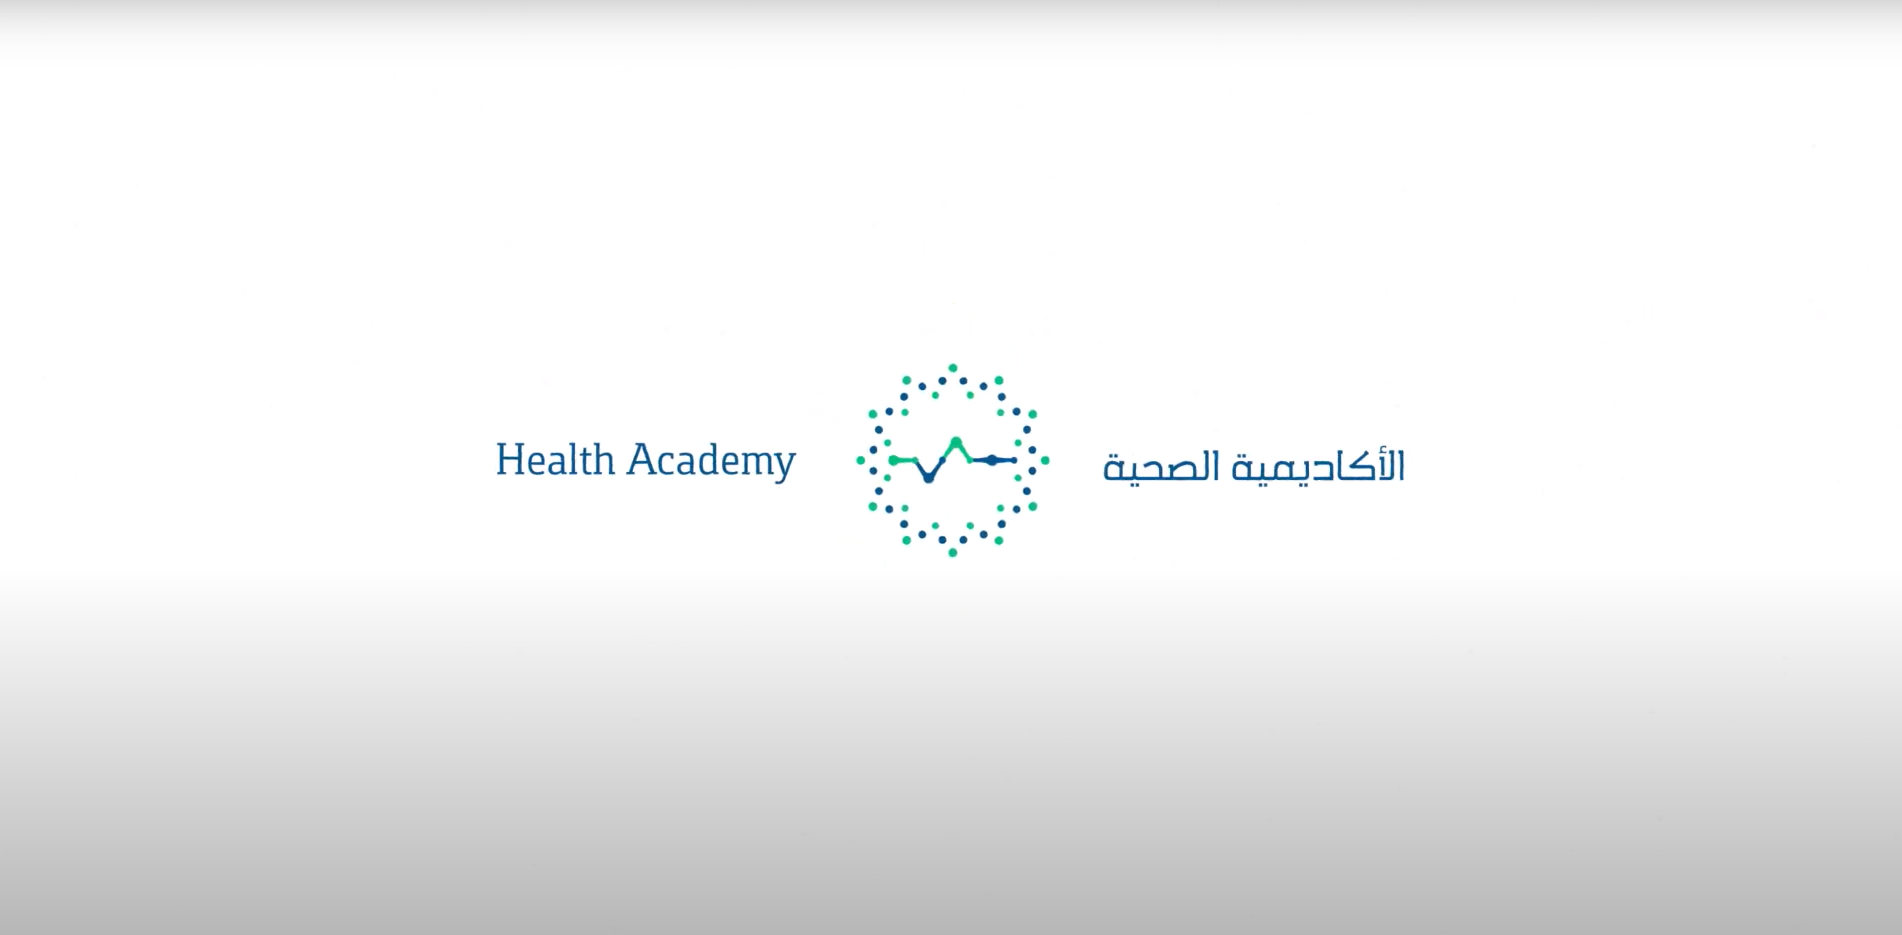  The Health Academy